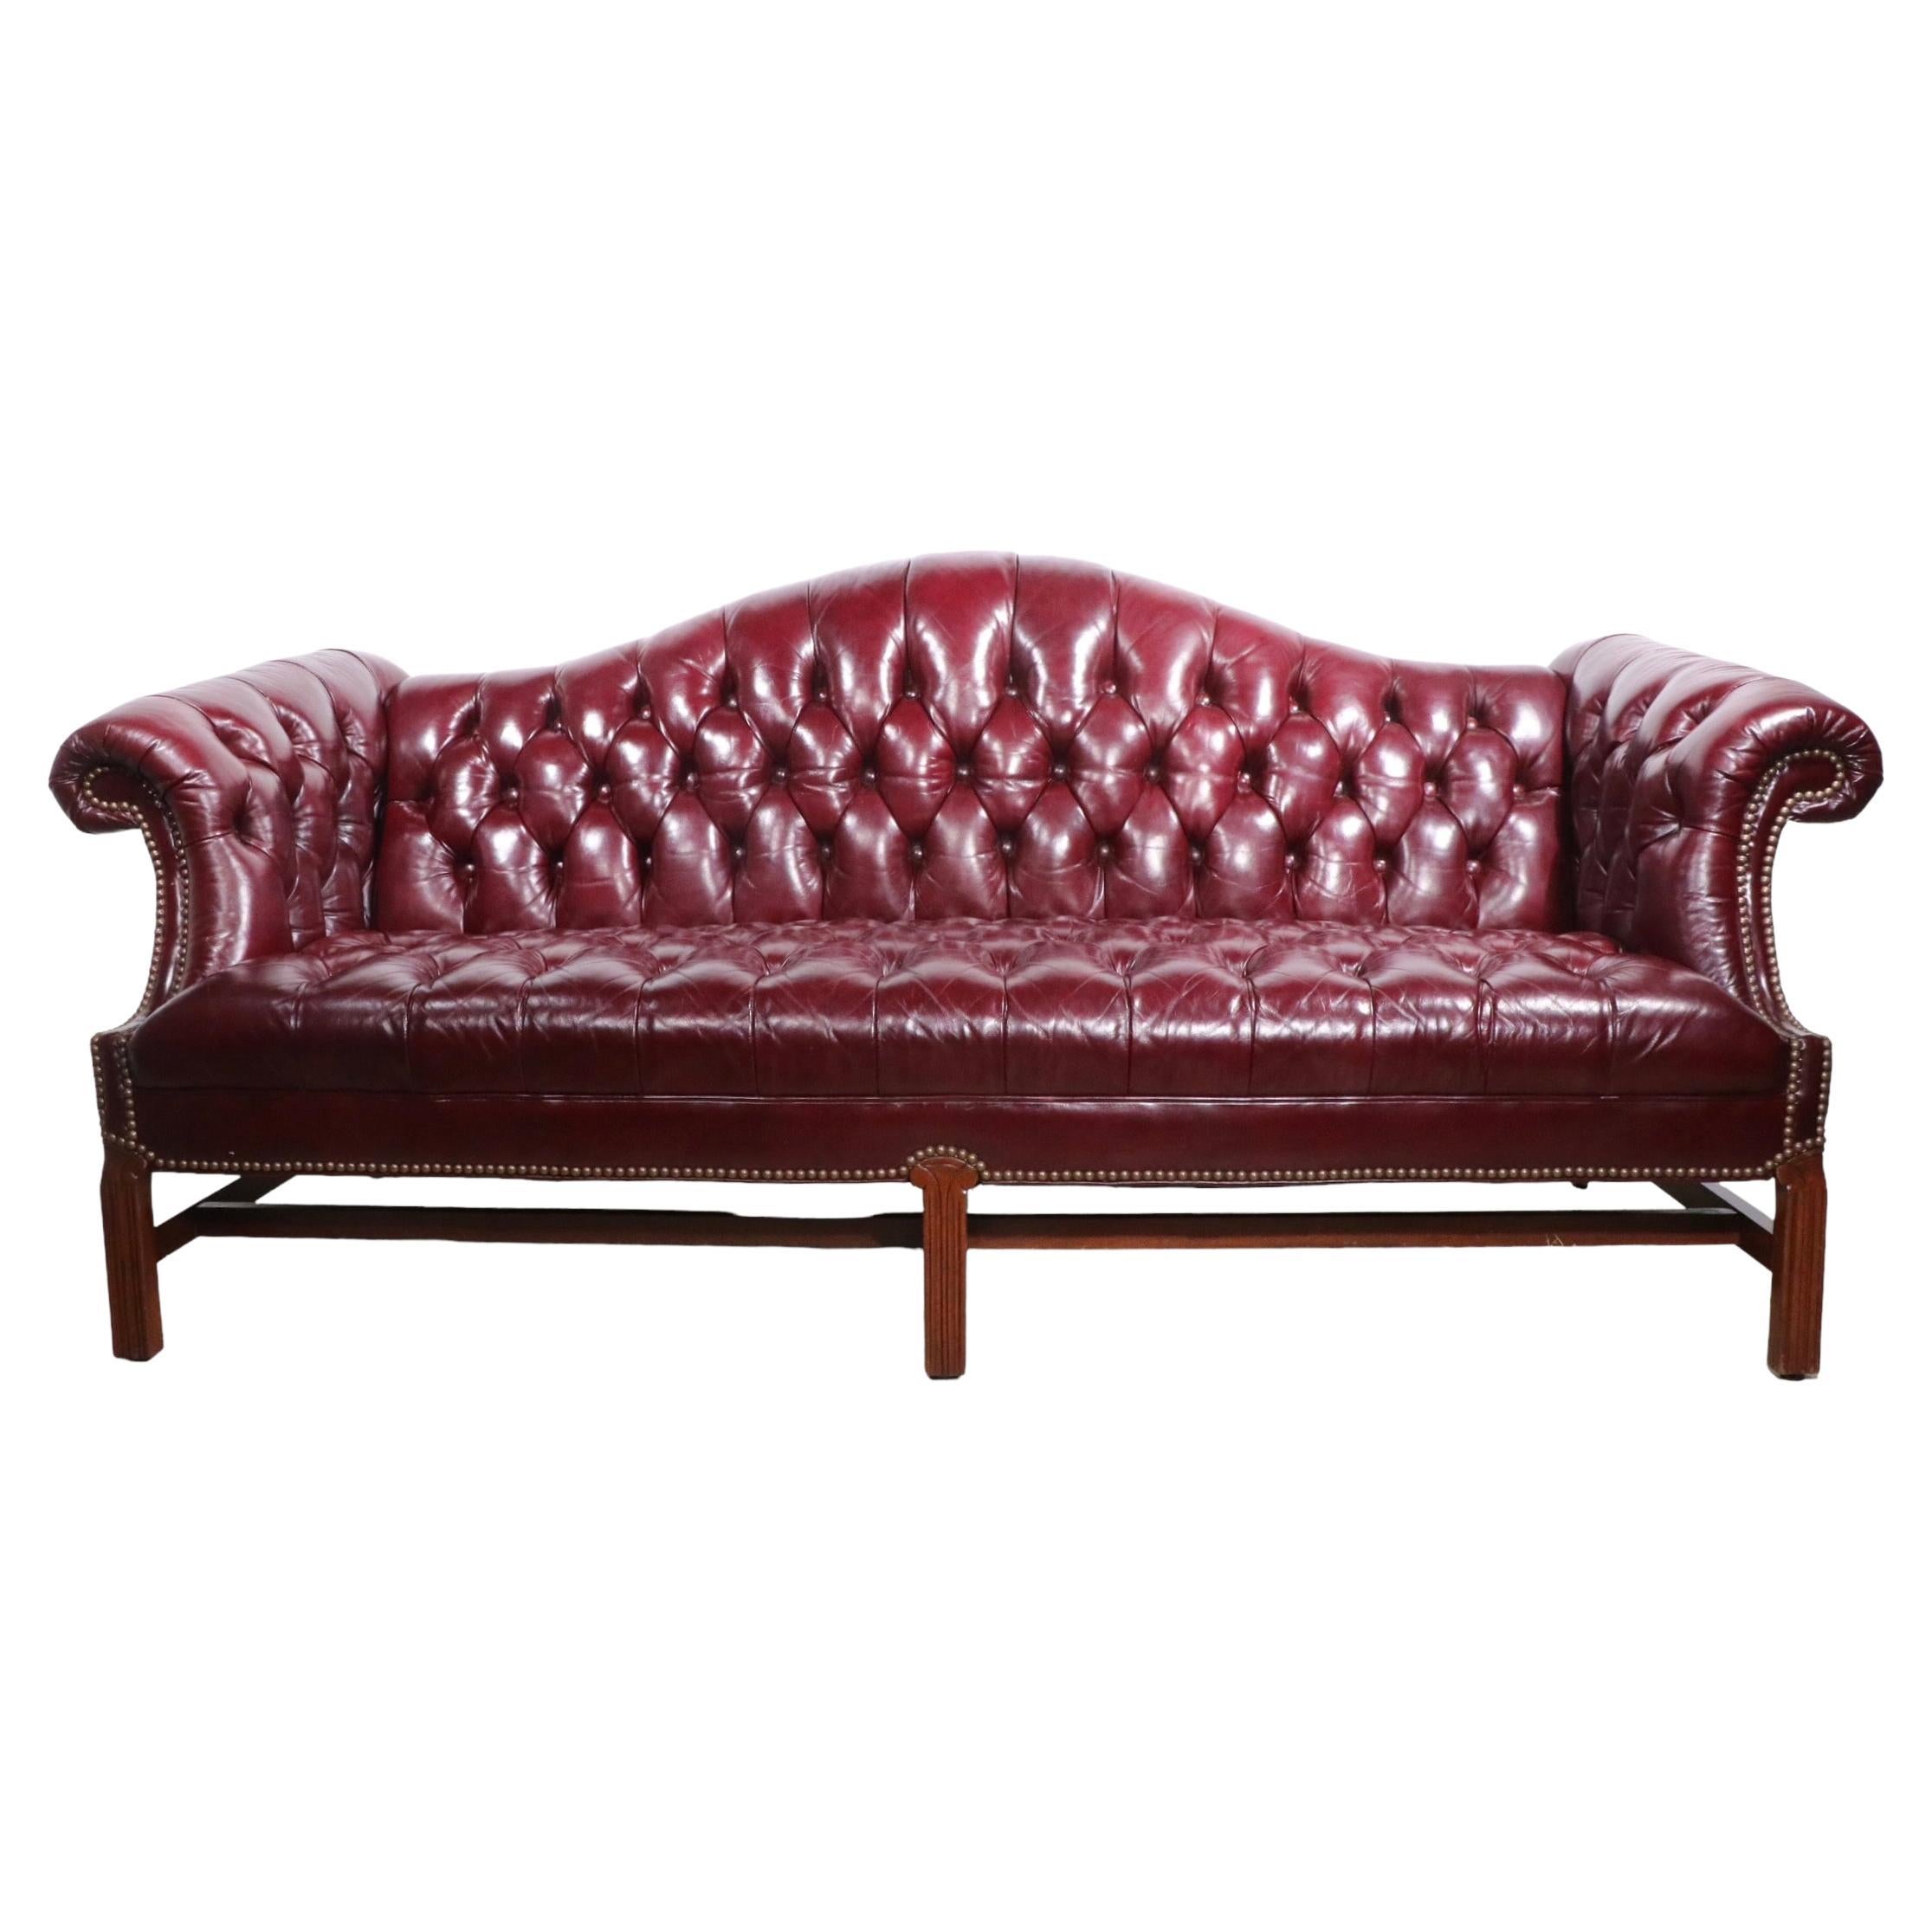  Getuftetes Burgunderrot  Chesterfield-Sofa aus Leder ca. 1950/1960er Jahre